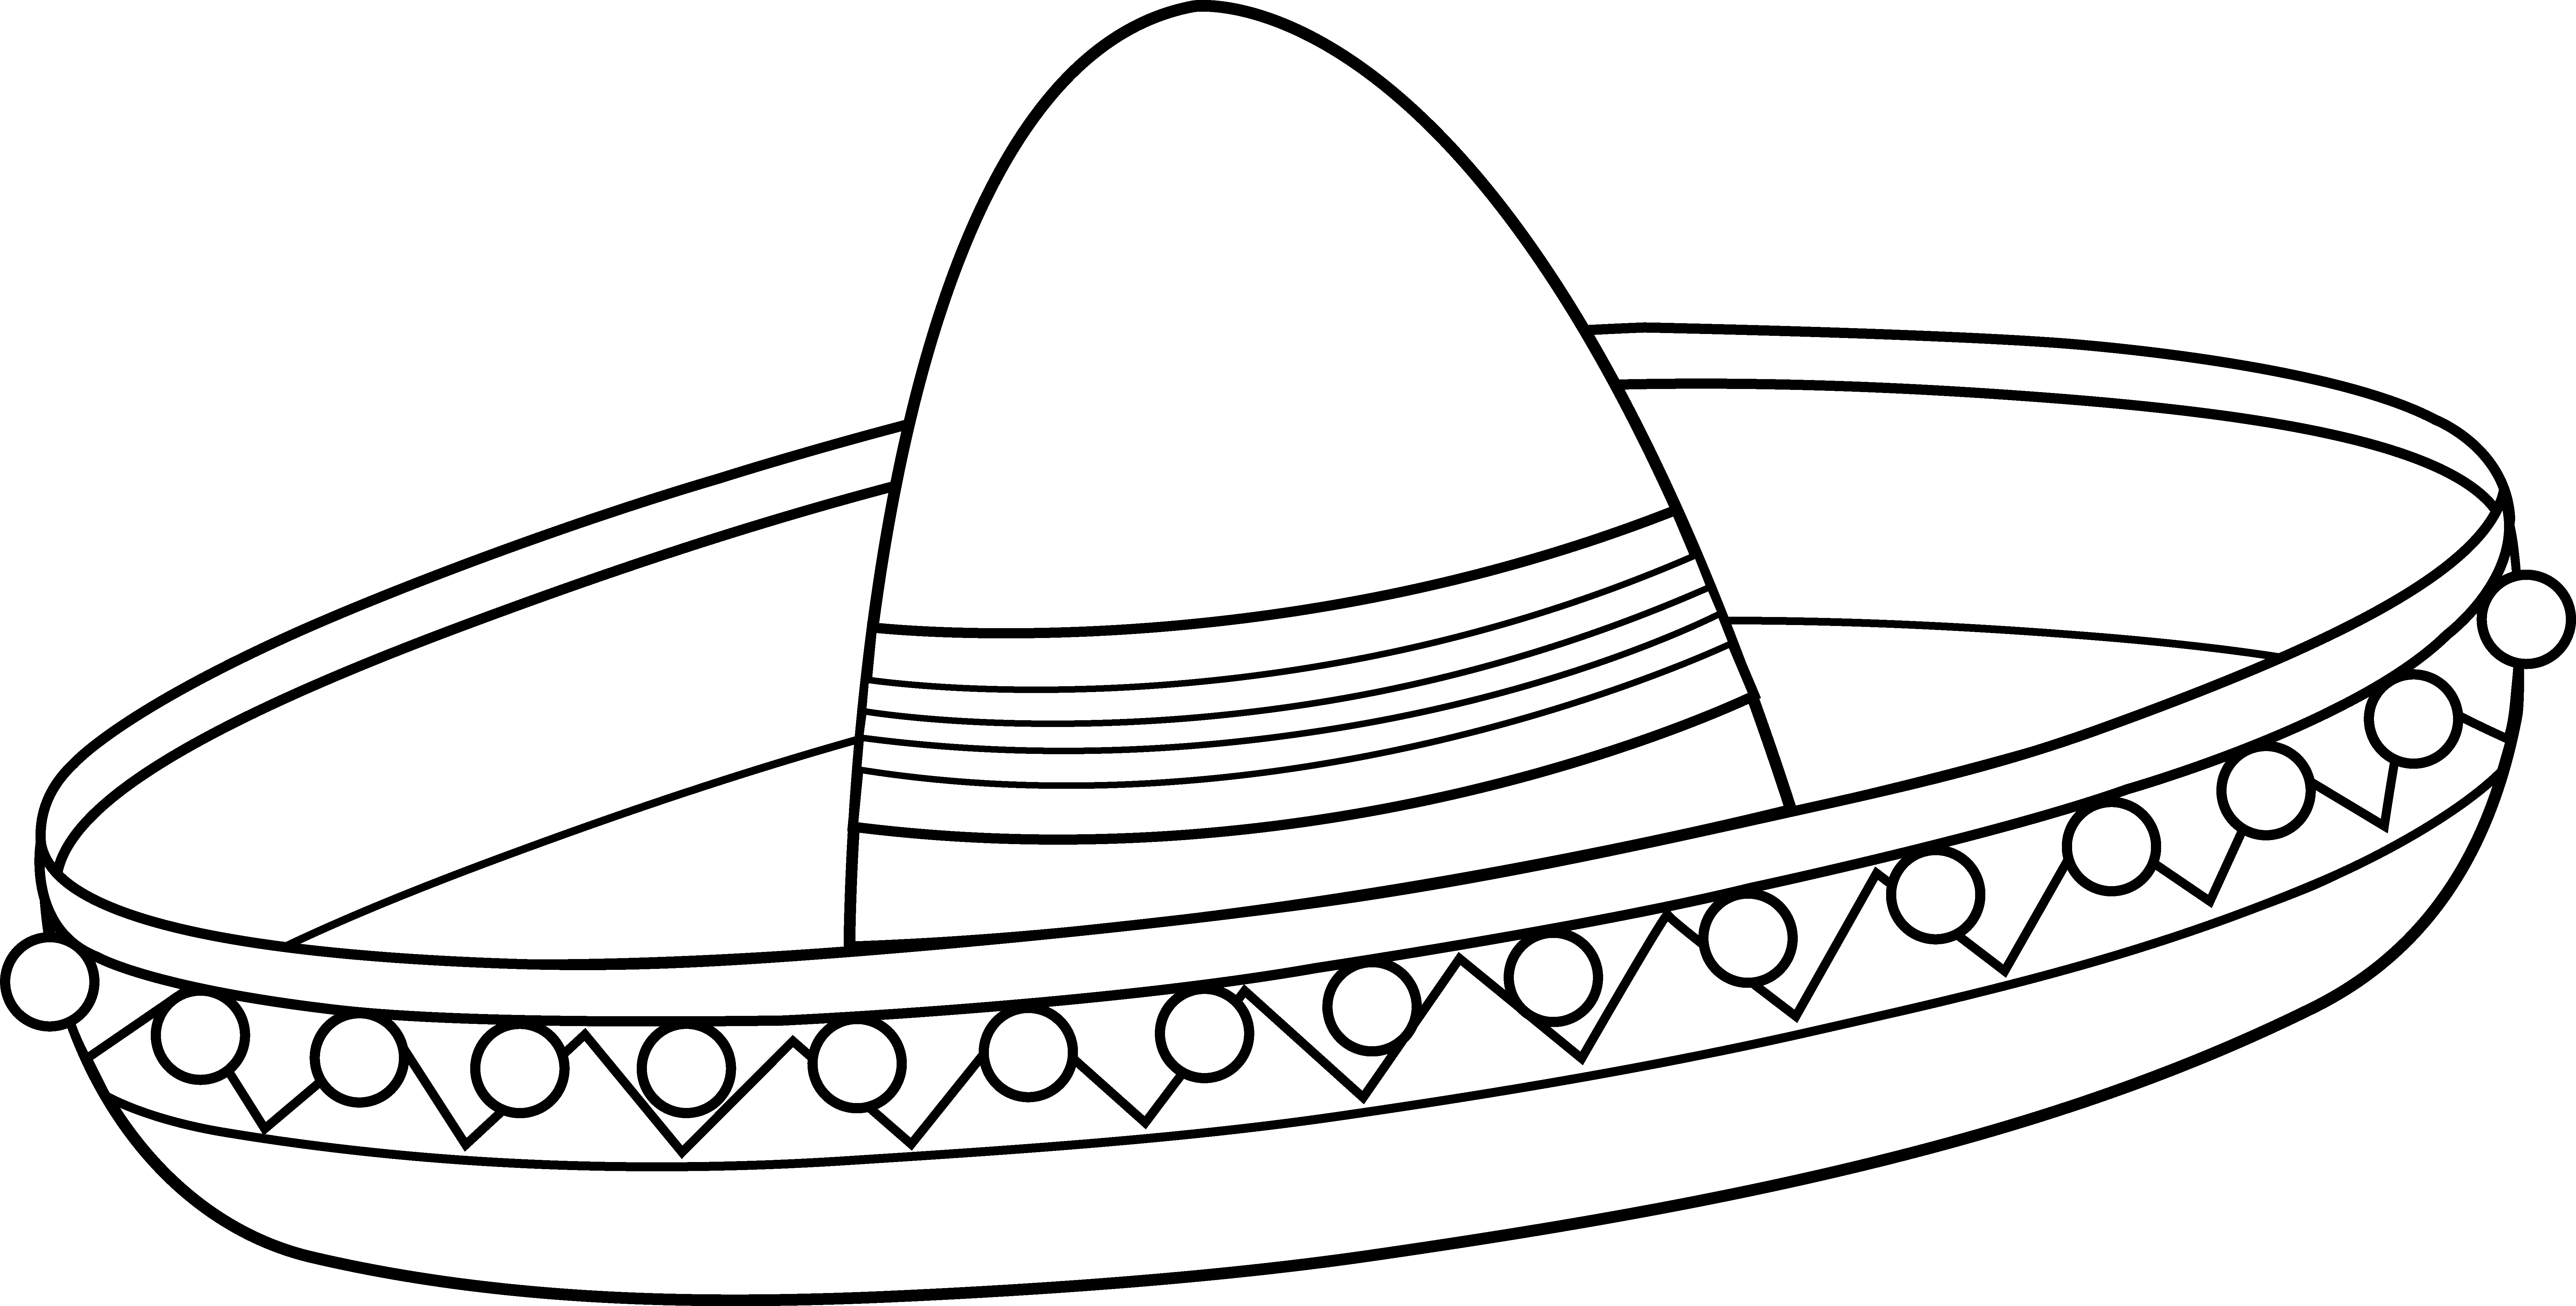 Mexican Sombrero Image